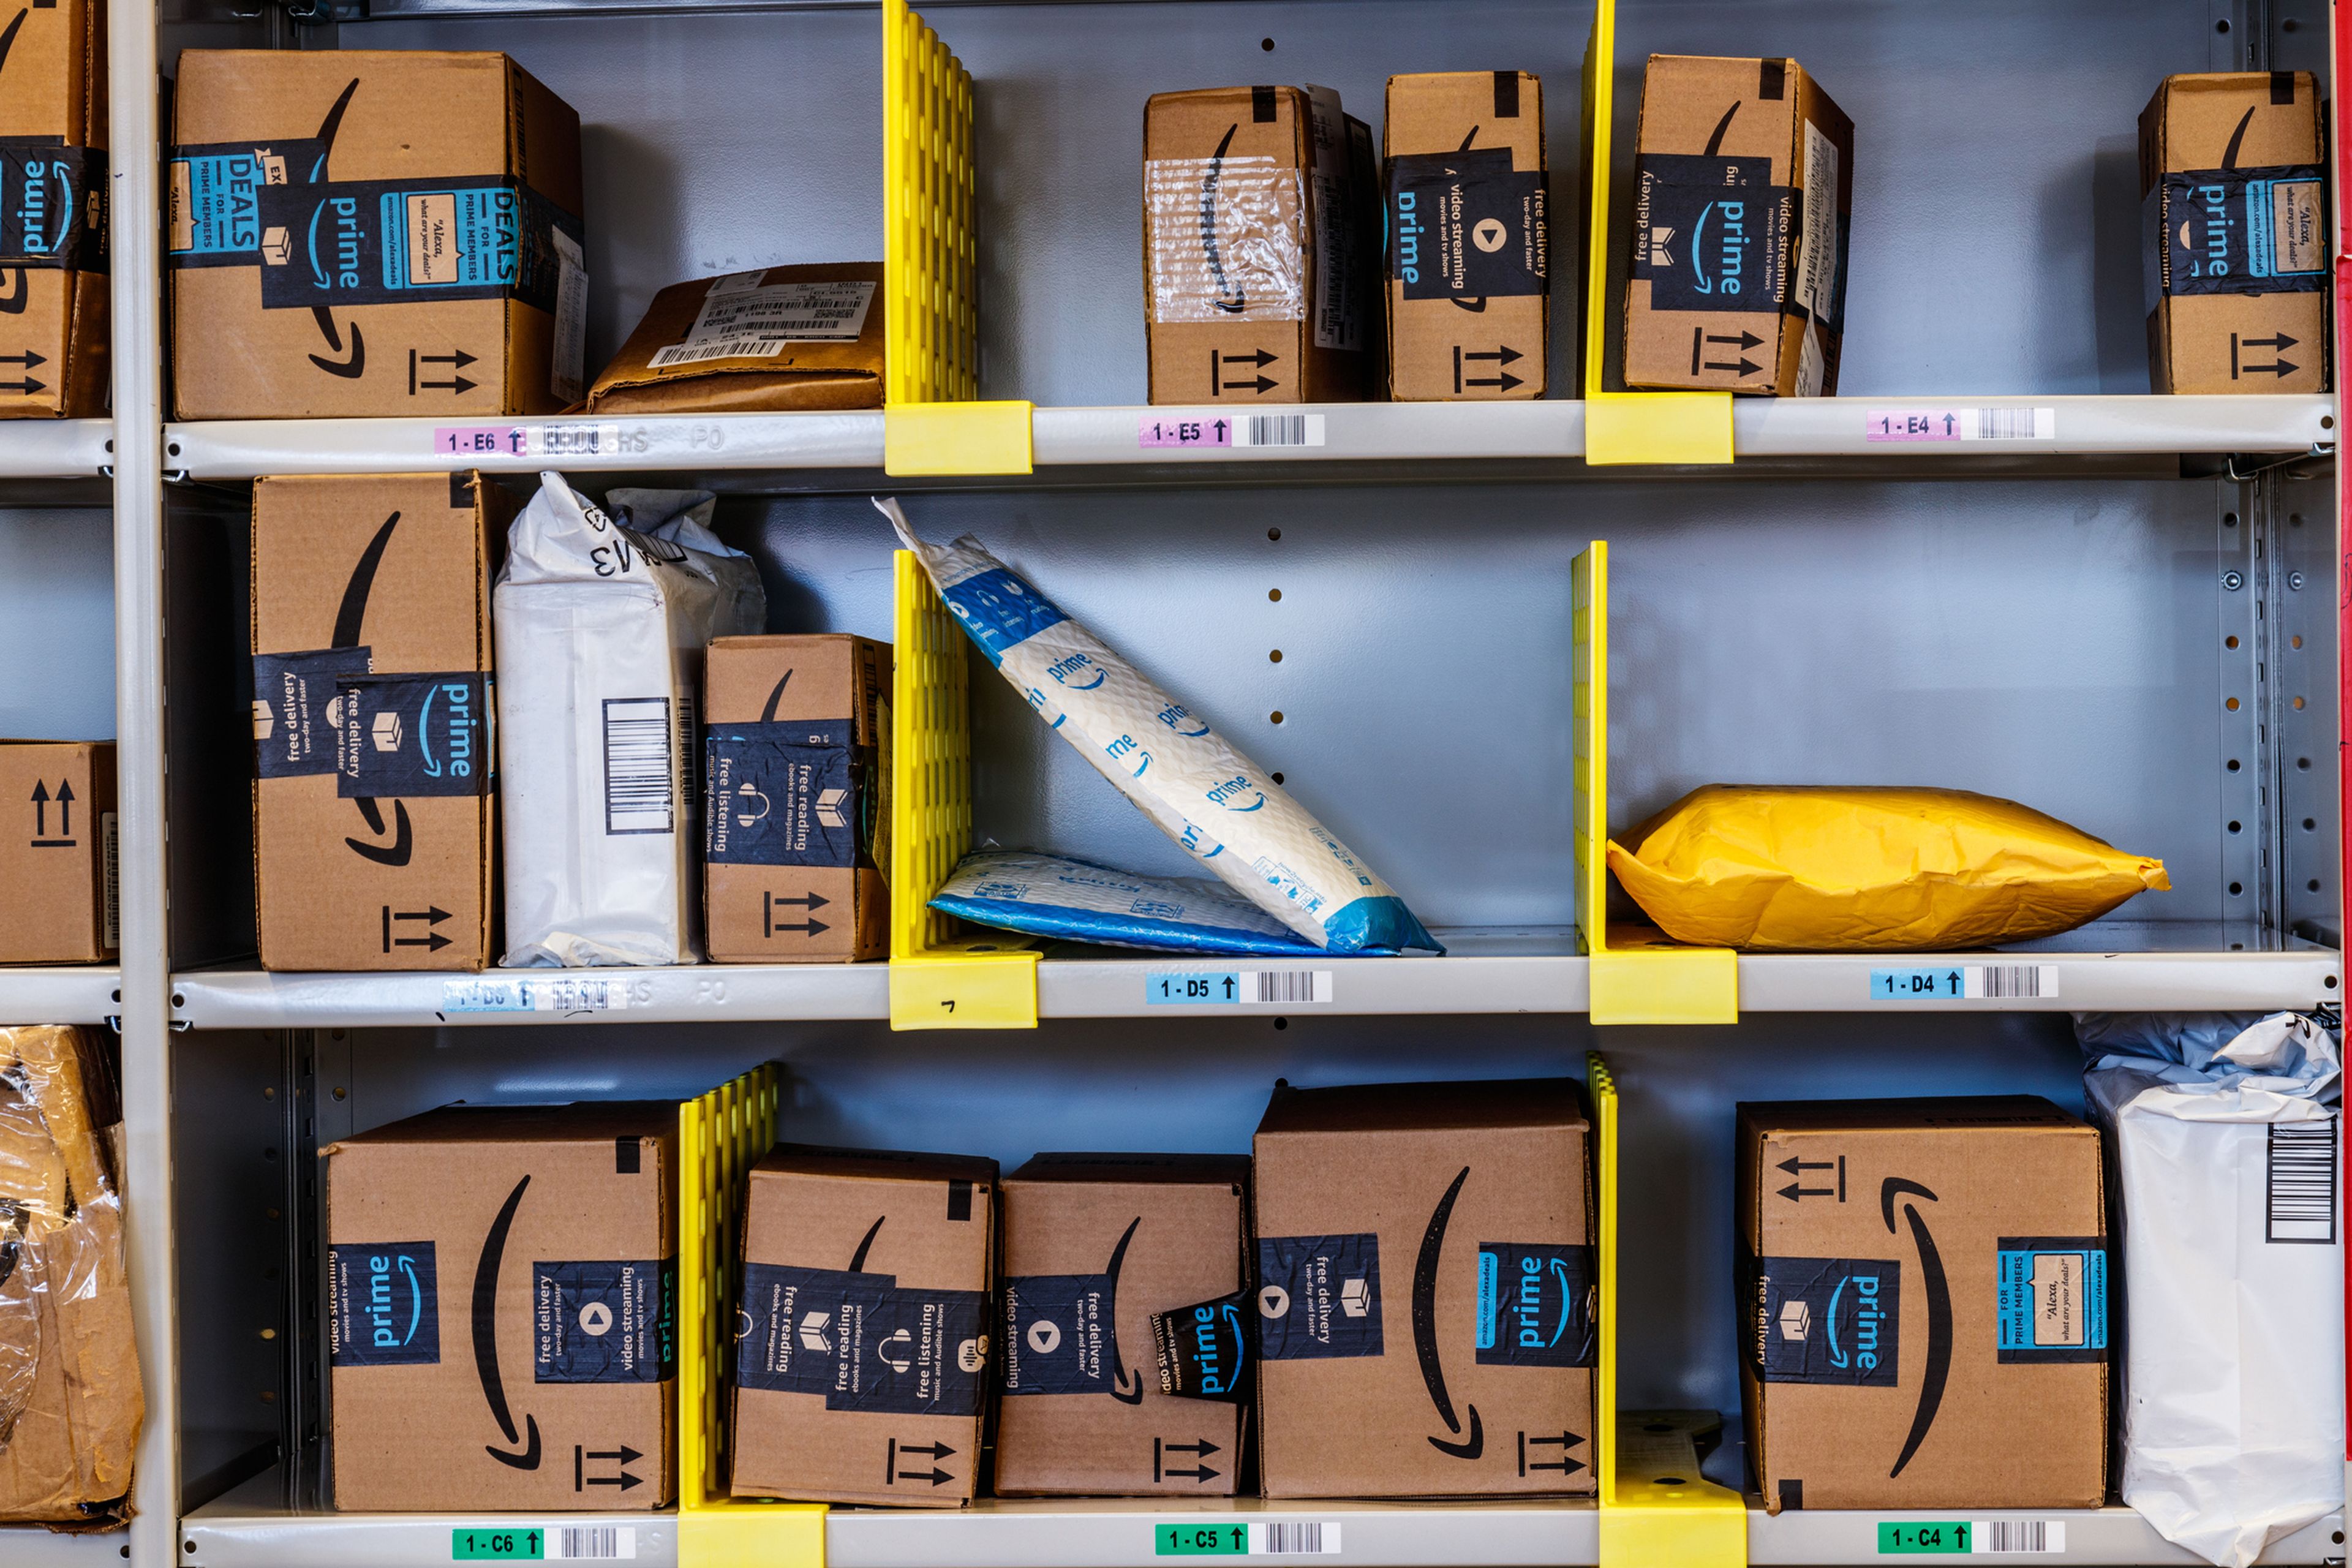 Productos de Amazon en una estantería